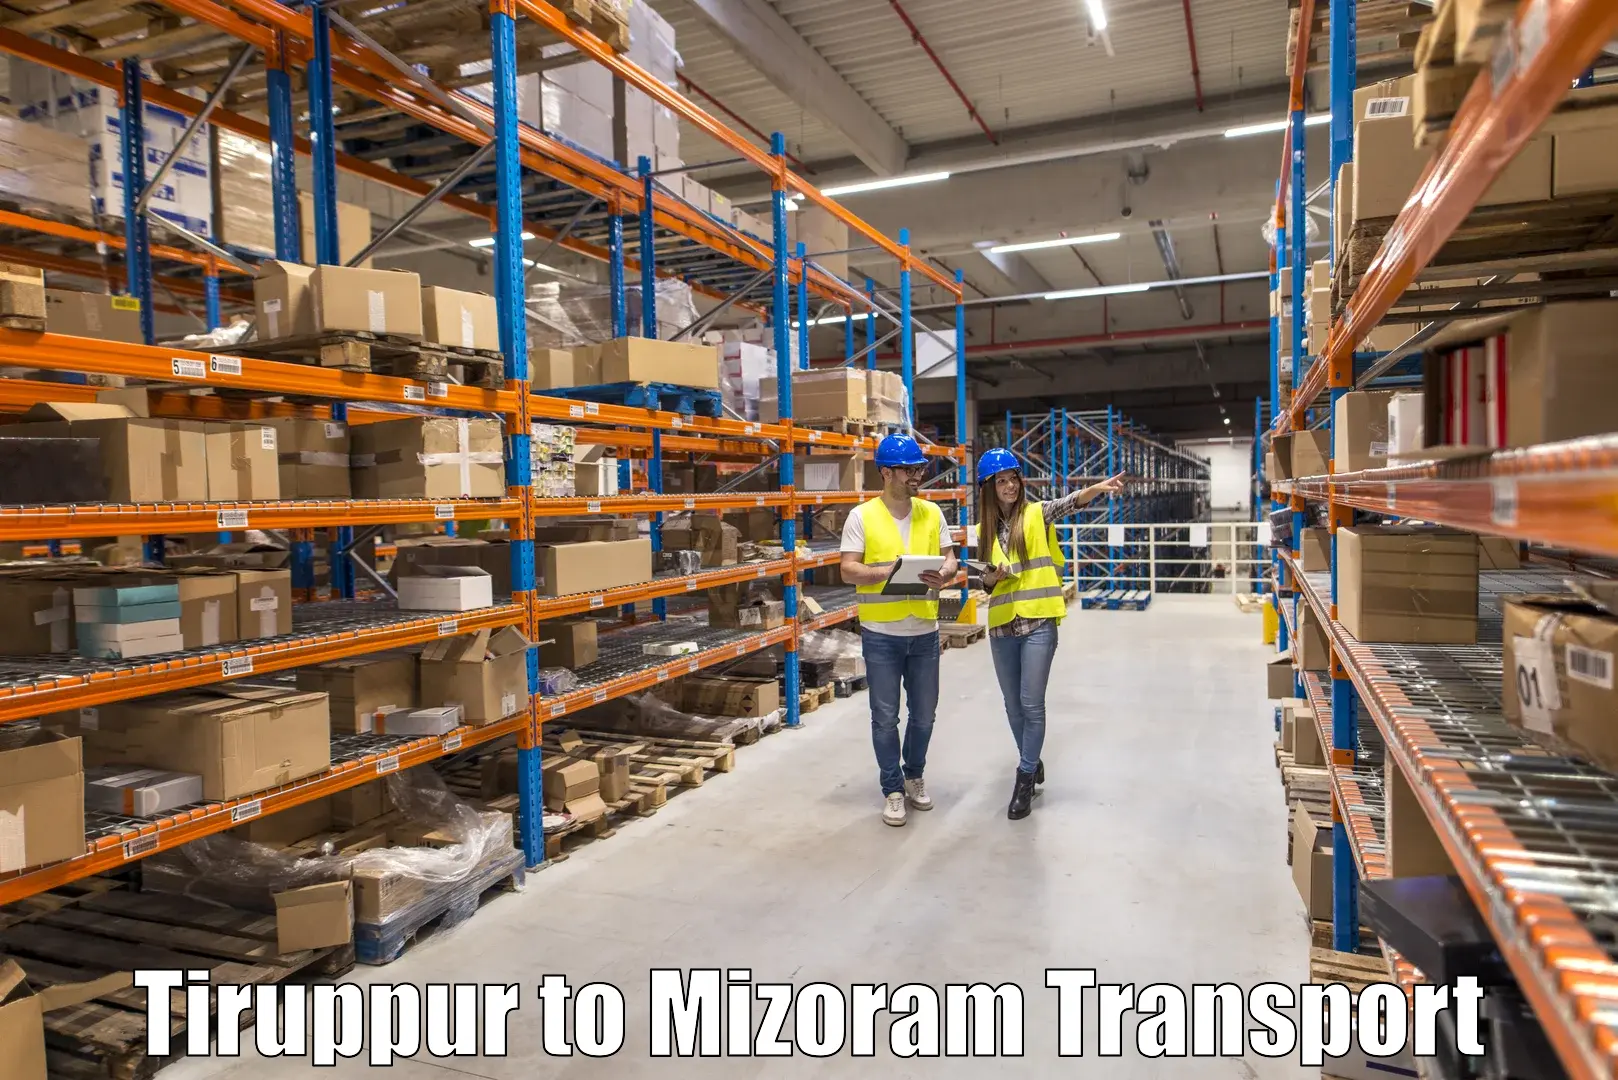 Express transport services Tiruppur to Saitual